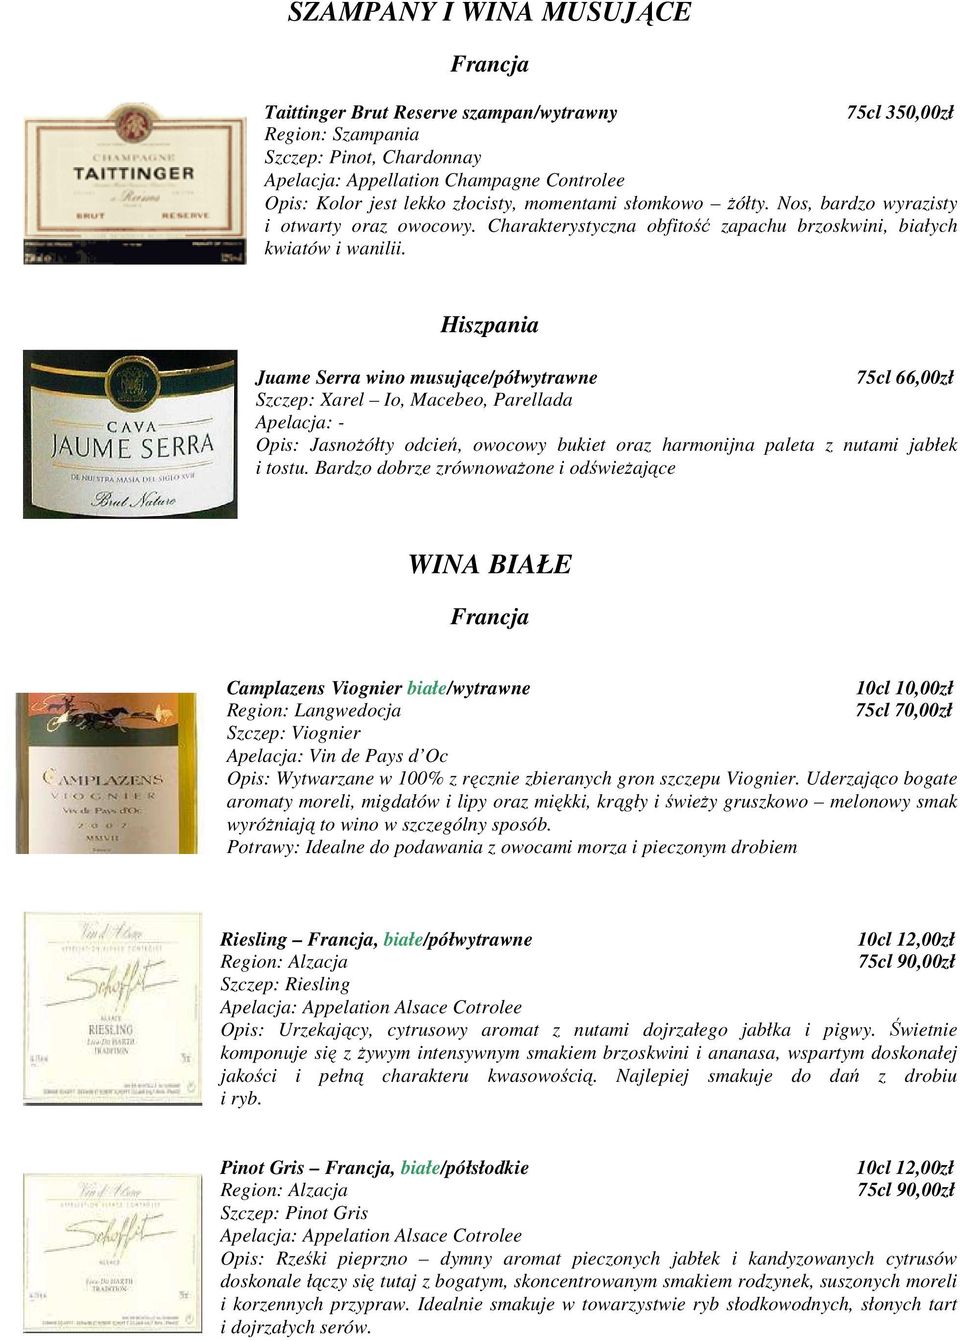 Hiszpania Juame Serra wino musujące/półwytrawne 75cl 66,00zł Szczep: Xarel Io, Macebeo, Parellada Opis: JasnoŜółty odcień, owocowy bukiet oraz harmonijna paleta z nutami jabłek i tostu.